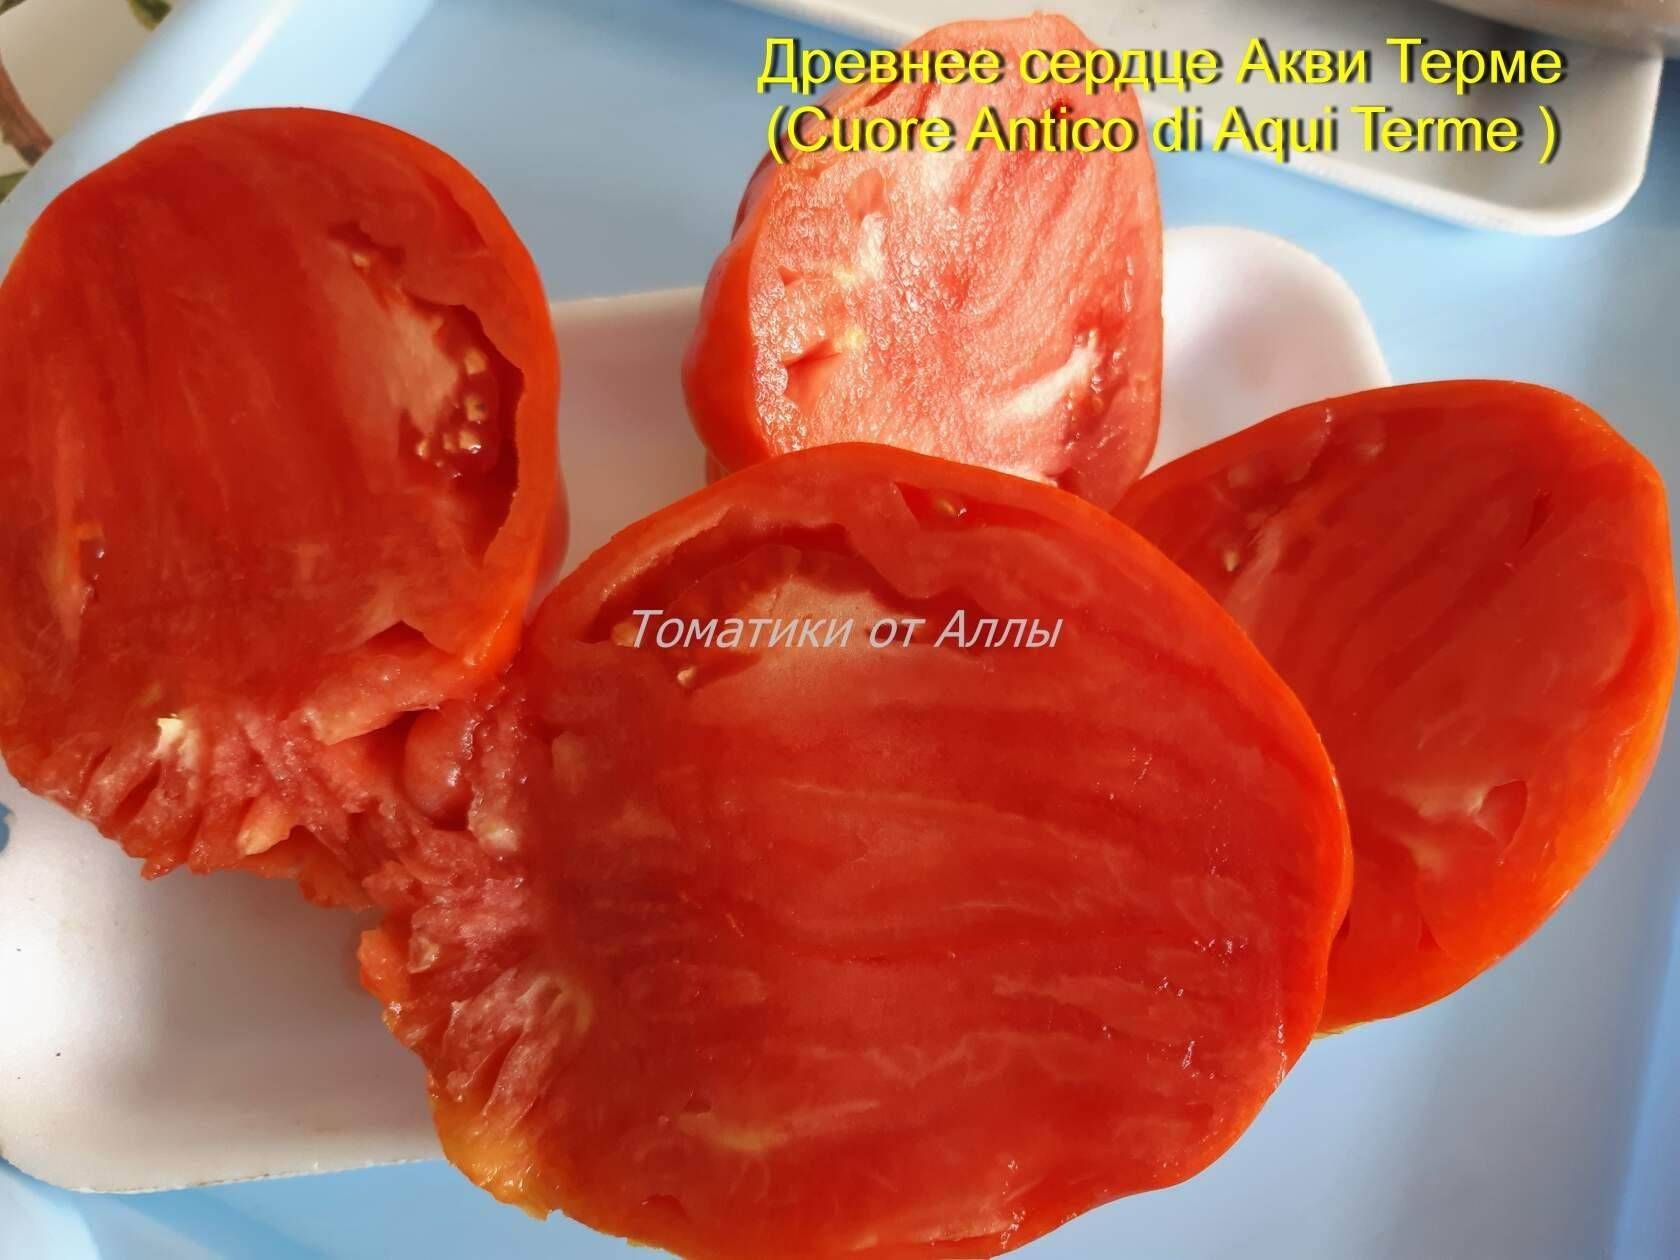 Cuore Antico di Acqui Terme томат